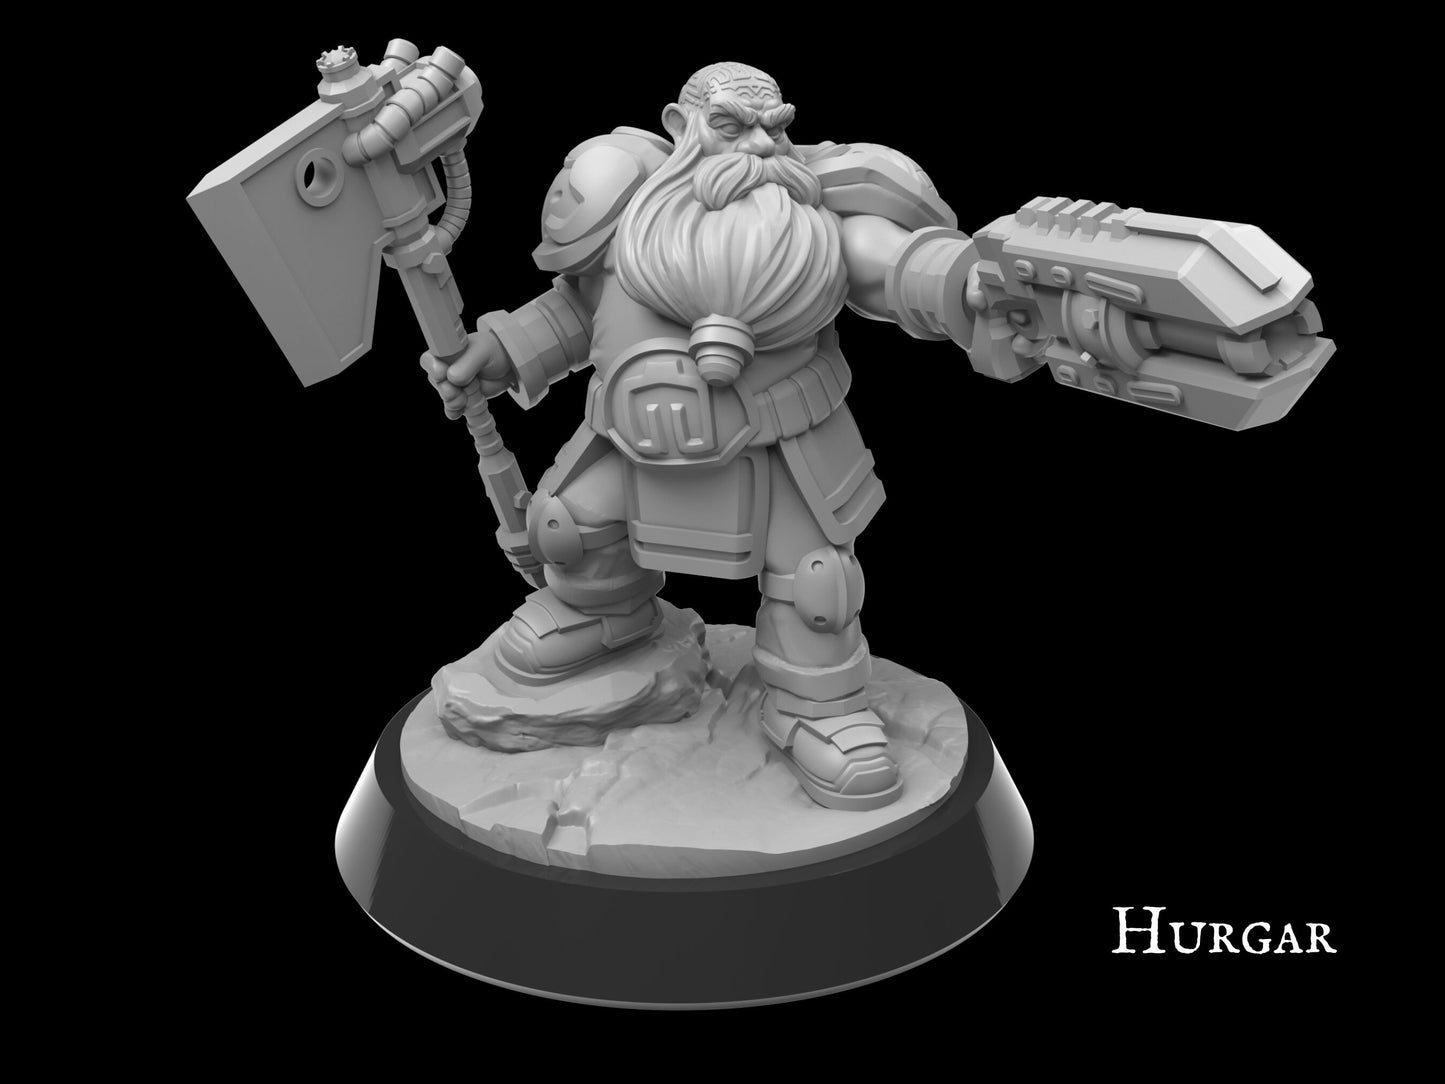 Trooper Nalgrim, Hammer-Wielding Dwarf Miniature | Assault Squad Member - Plague Miniatures